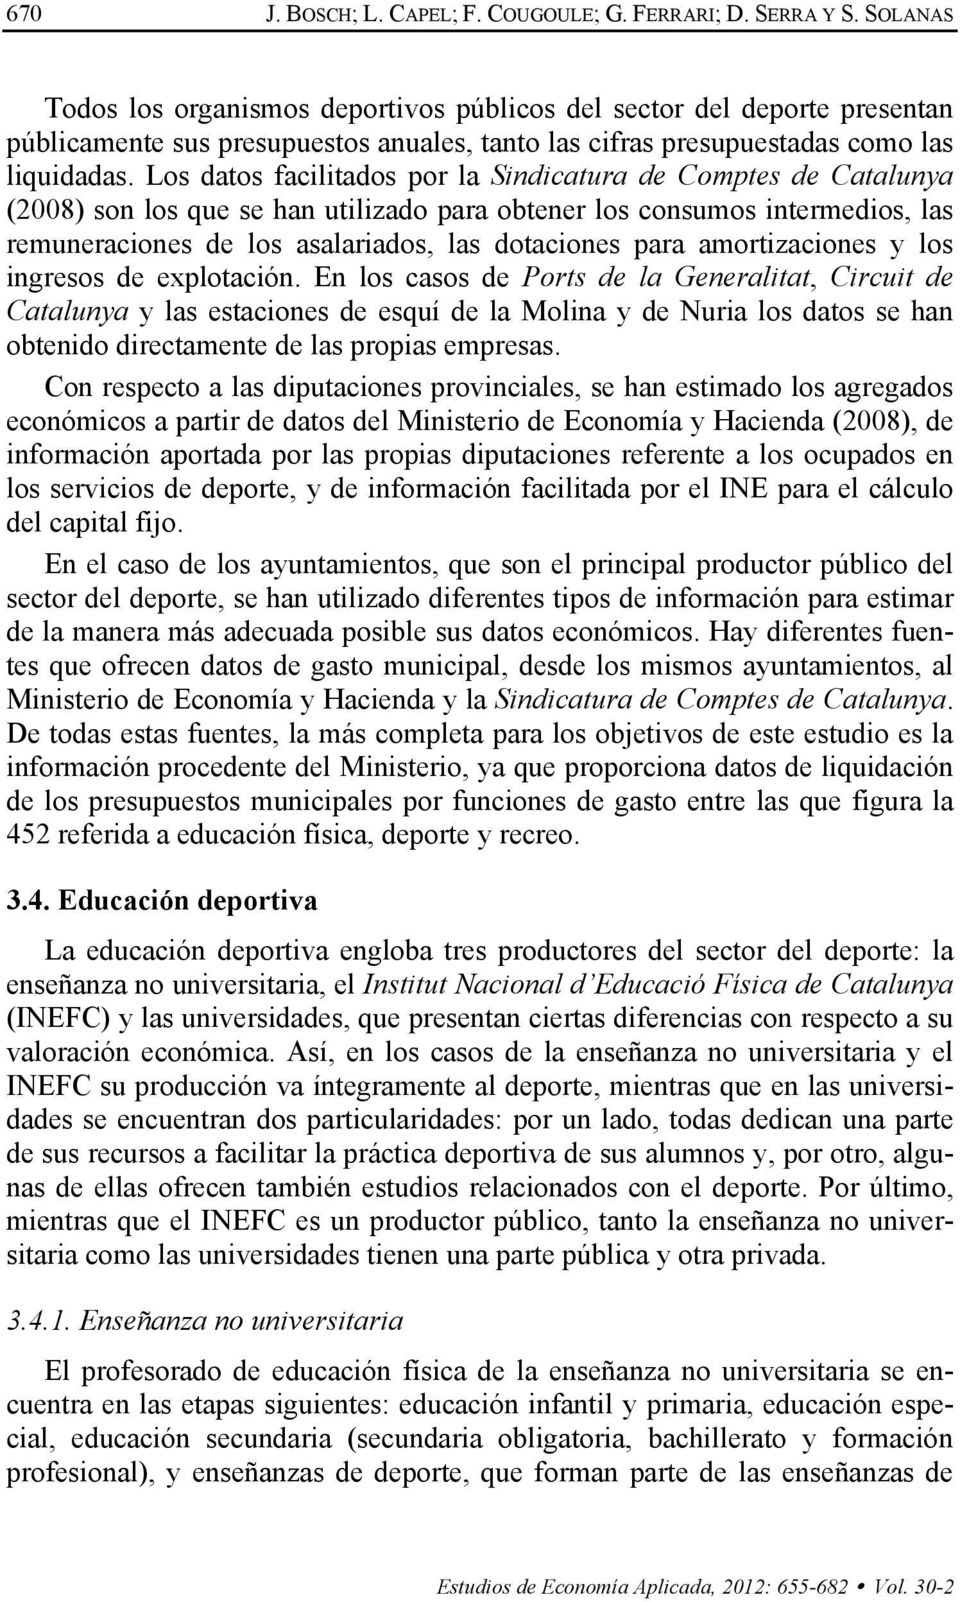 Los datos facilitados por la Sindicatura de Comptes de Catalunya (2008) son los que se han utilizado para obtener los consumos intermedios, las remuneraciones de los asalariados, las dotaciones para